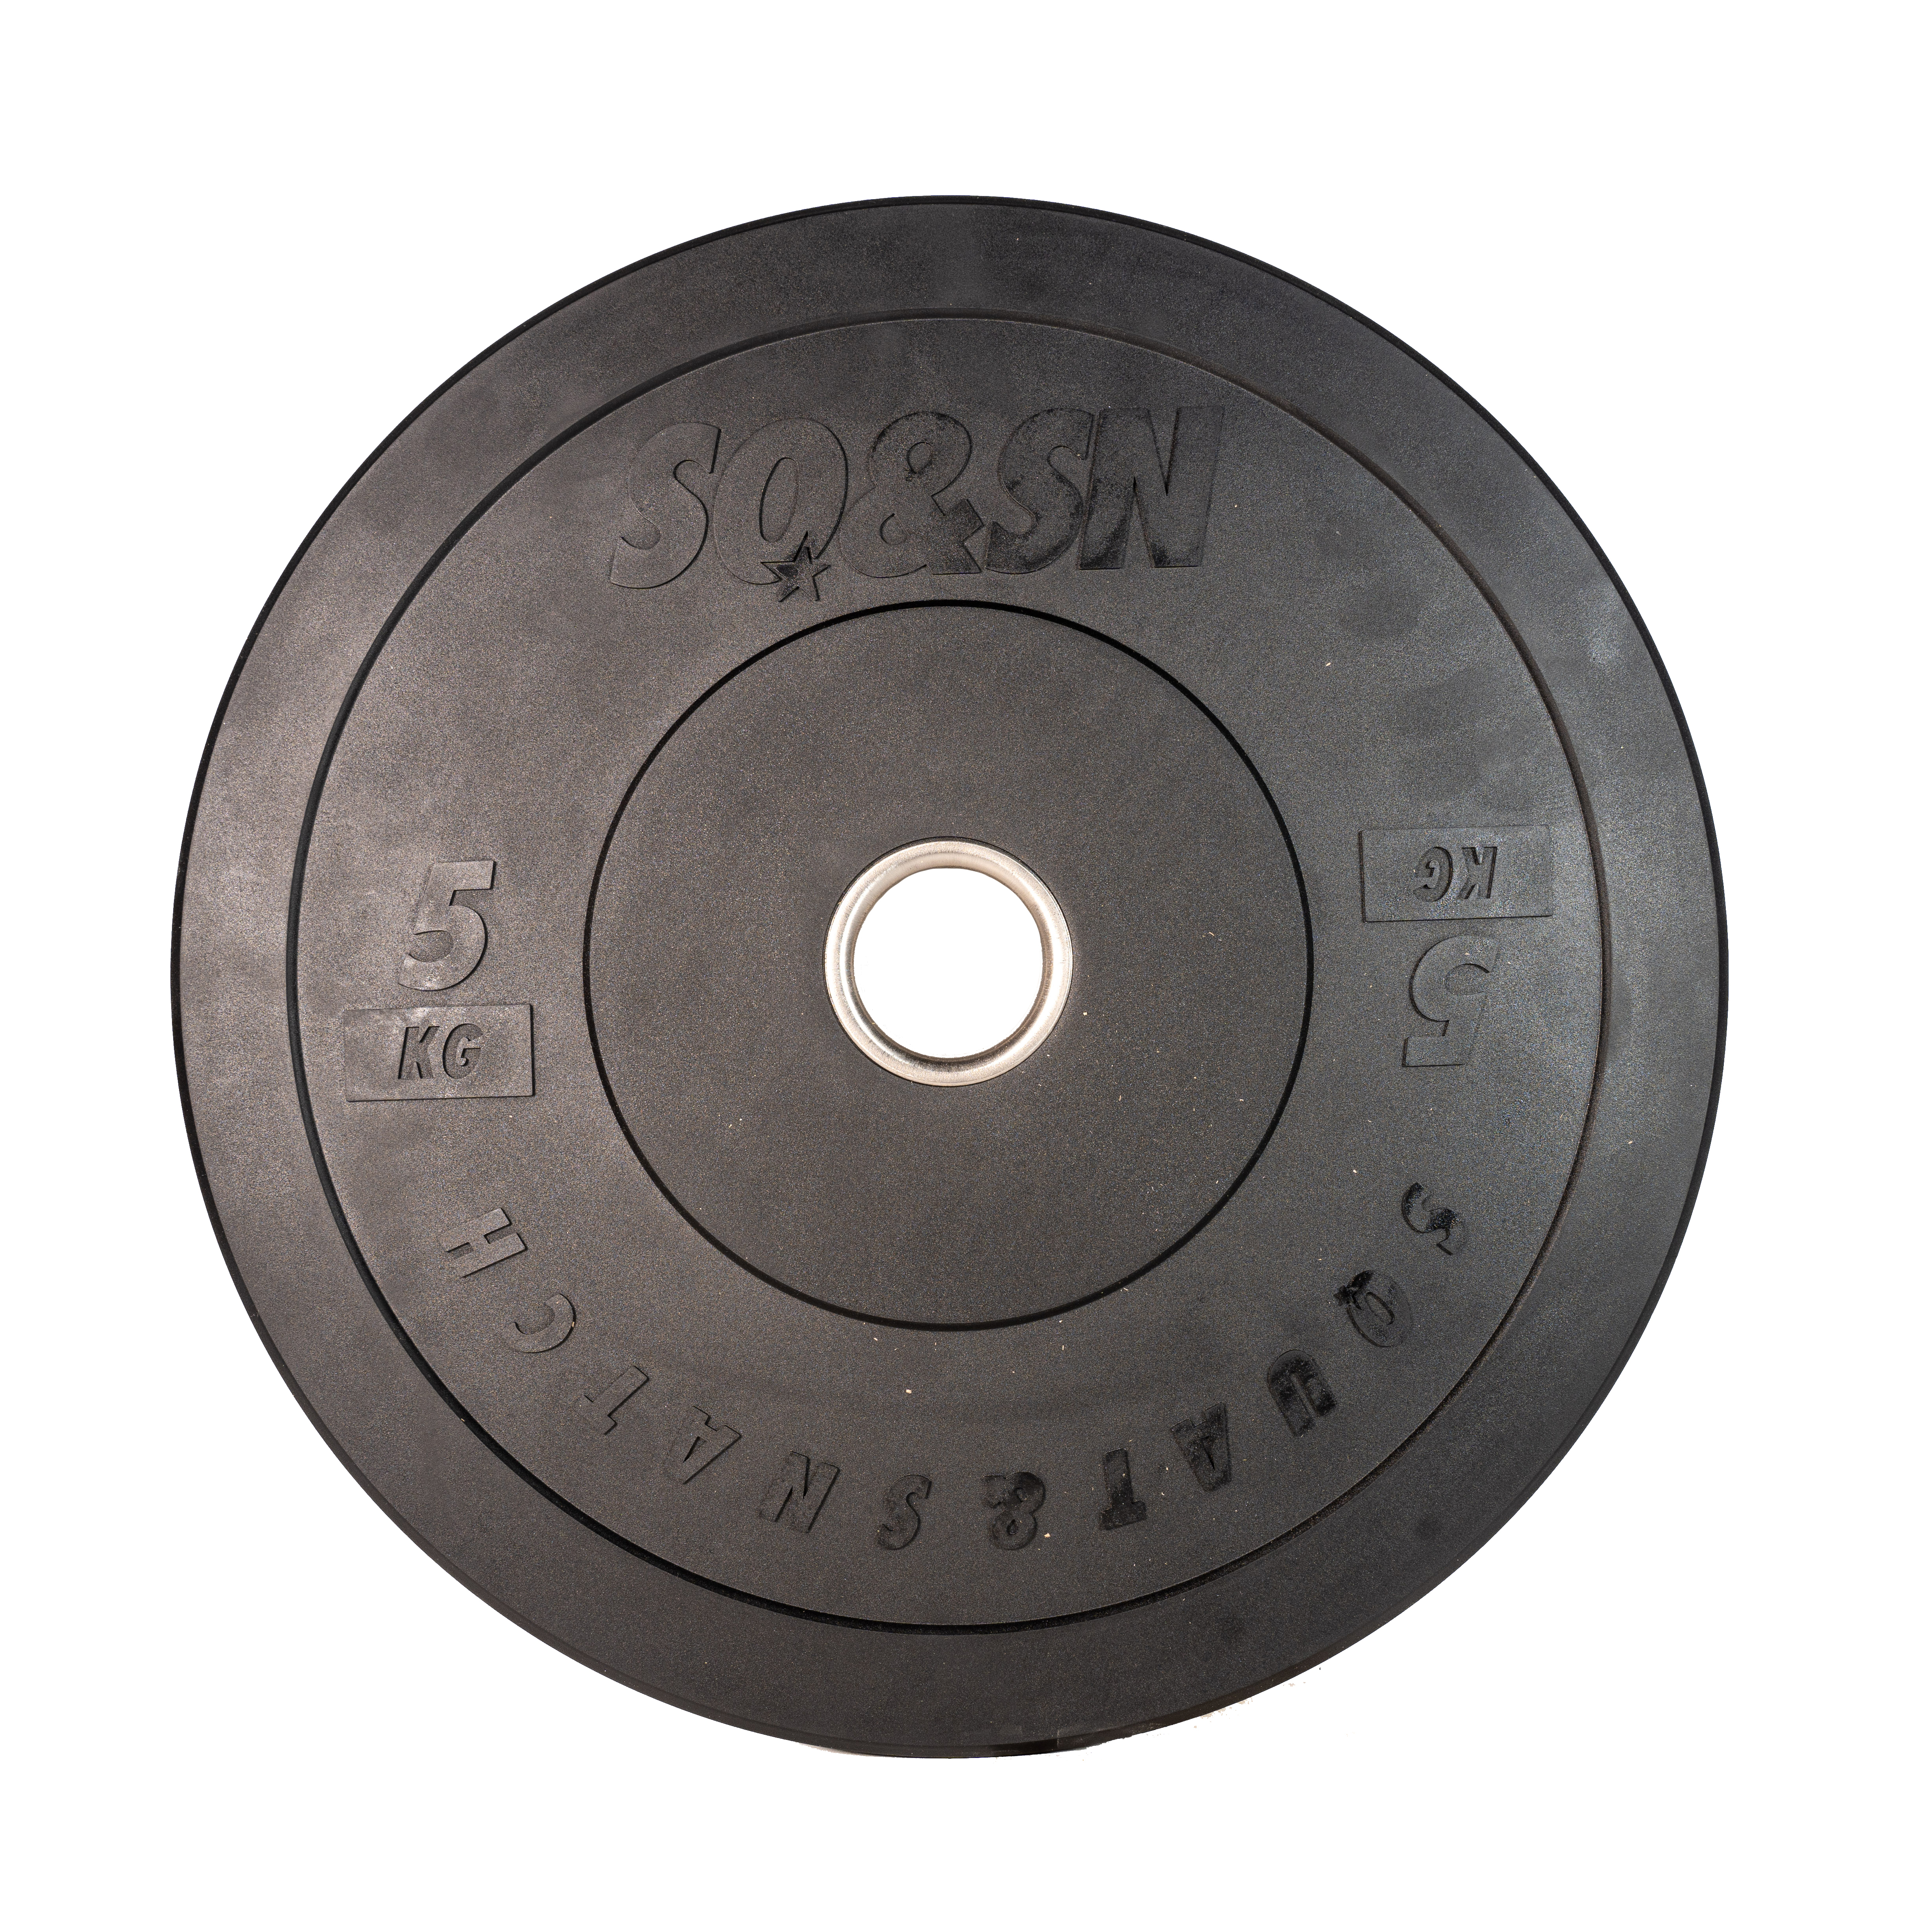 Brug SQ&SN Bumper Plate Vægtskive (5 kg) i sort. Udstyr til styrketræning, vægtløftning og crossfit træning til en forbedret oplevelse